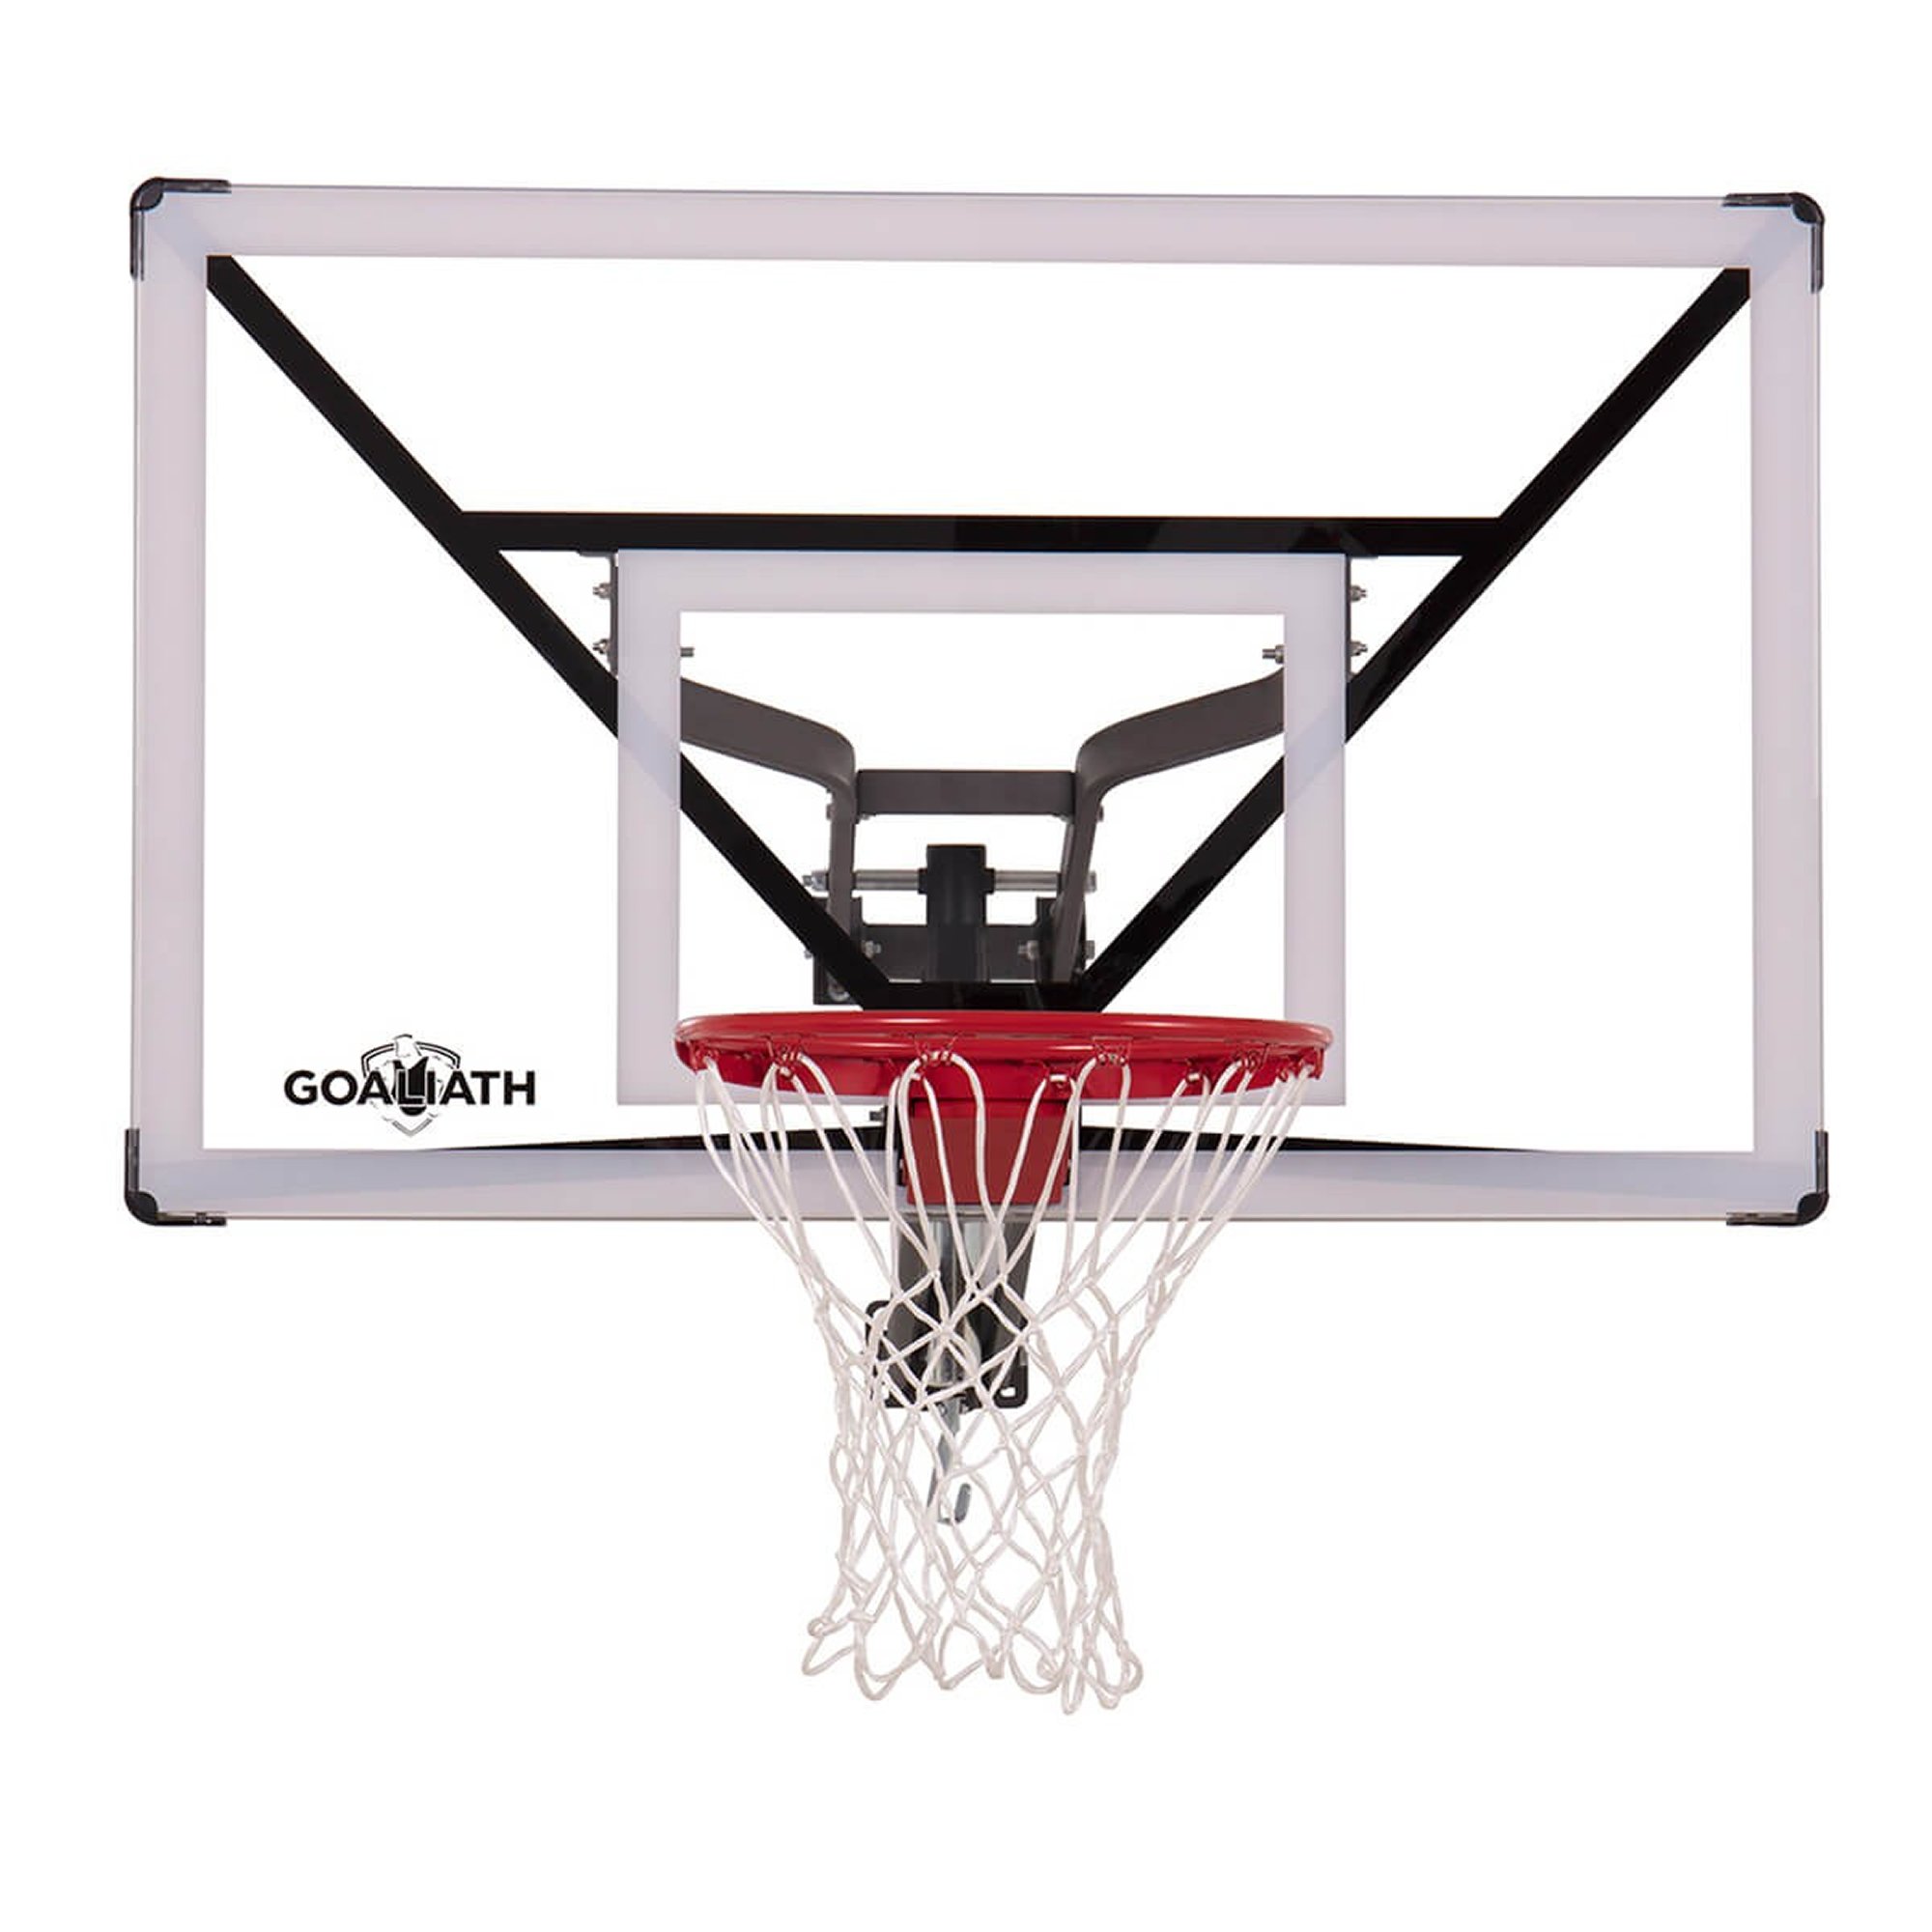 Wandhalterung für Bälle im Hand Design - passend für Basketball